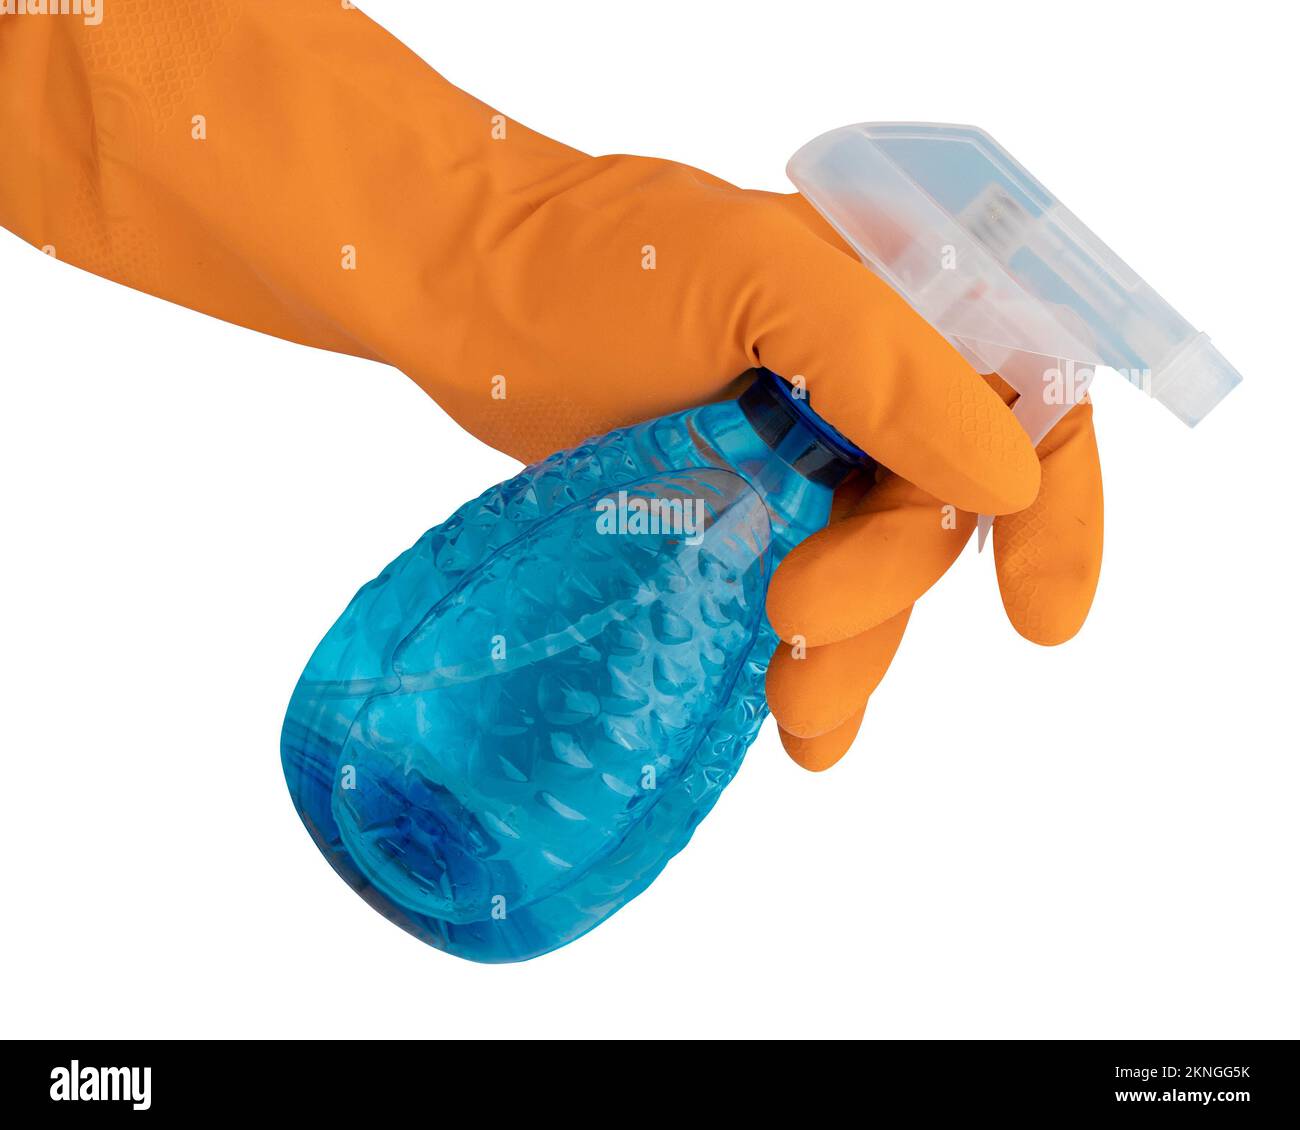 Hand in orangefarbener Schutzhandschuh mit Sprühflasche mit Desinfektionsmittel auf weißem Hintergrund, Desinfektions- oder Hygienekonzept bei Coronavirus-Ausbruch, c Stockfoto